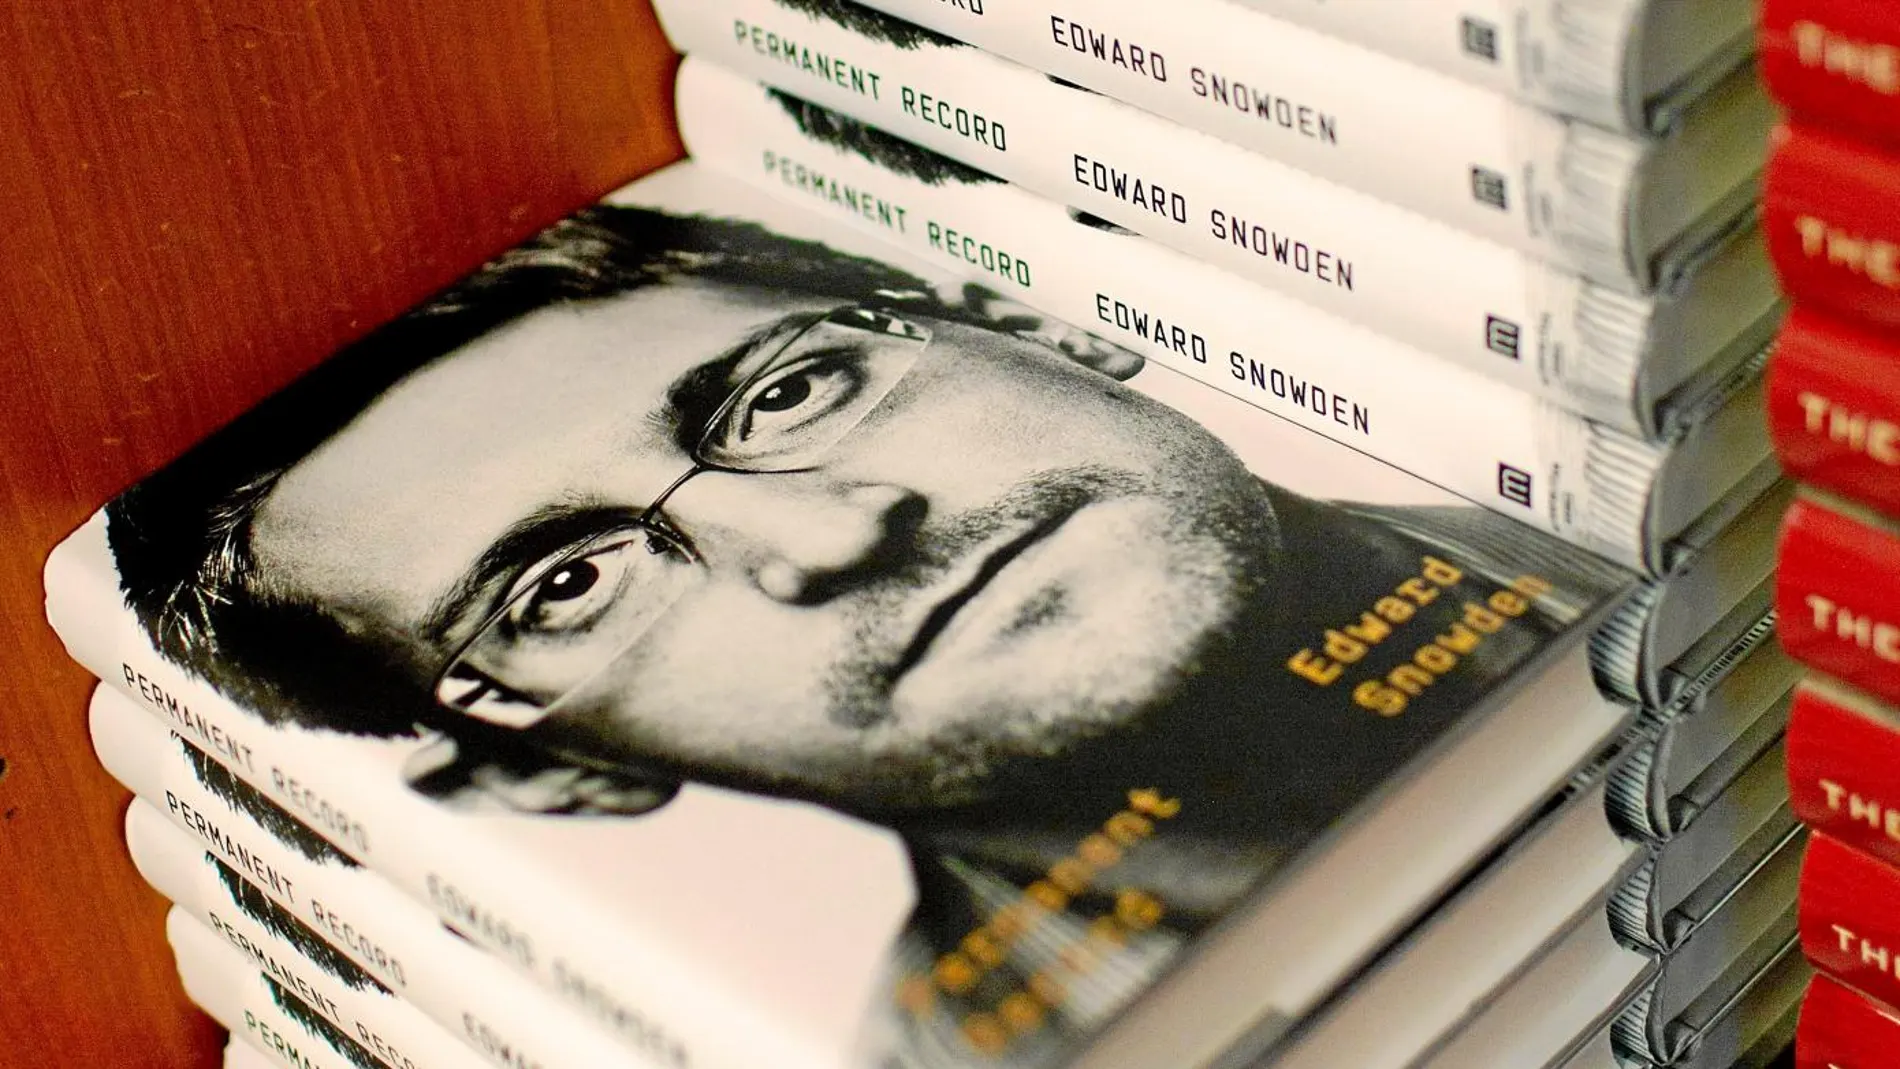 Varios ejemplares de «Vigilancia permanente», el libro de memorias del ex agente de la NSA Edward Snowden, exiliado en Rusia